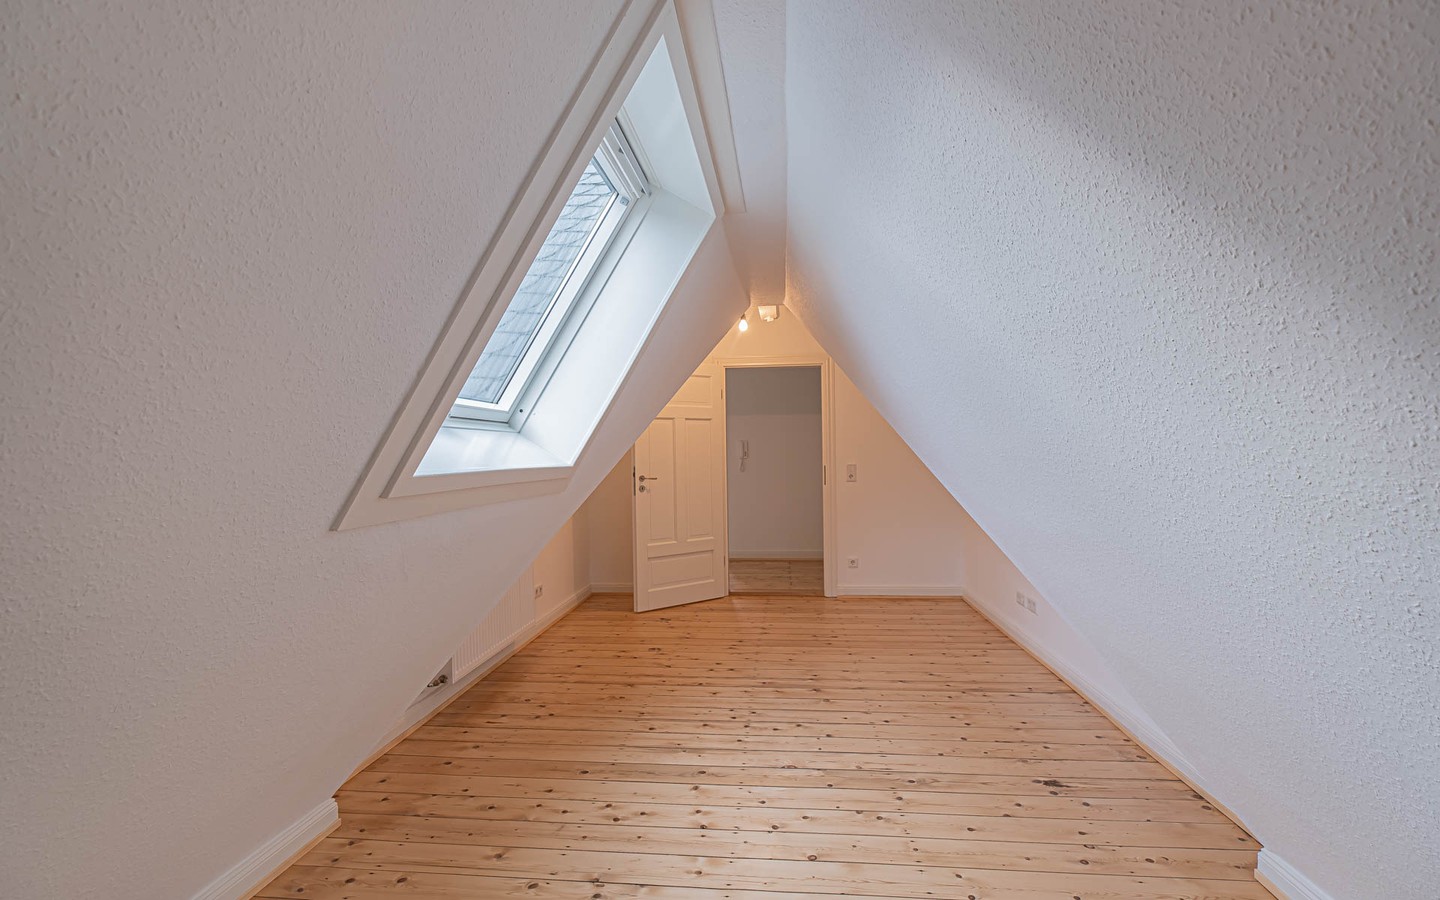 Zimmer "Kreativ" - Rarität – Dachgeschosswohnung mit Schlossblick -
 Ideal für kreative Singles oder Paare